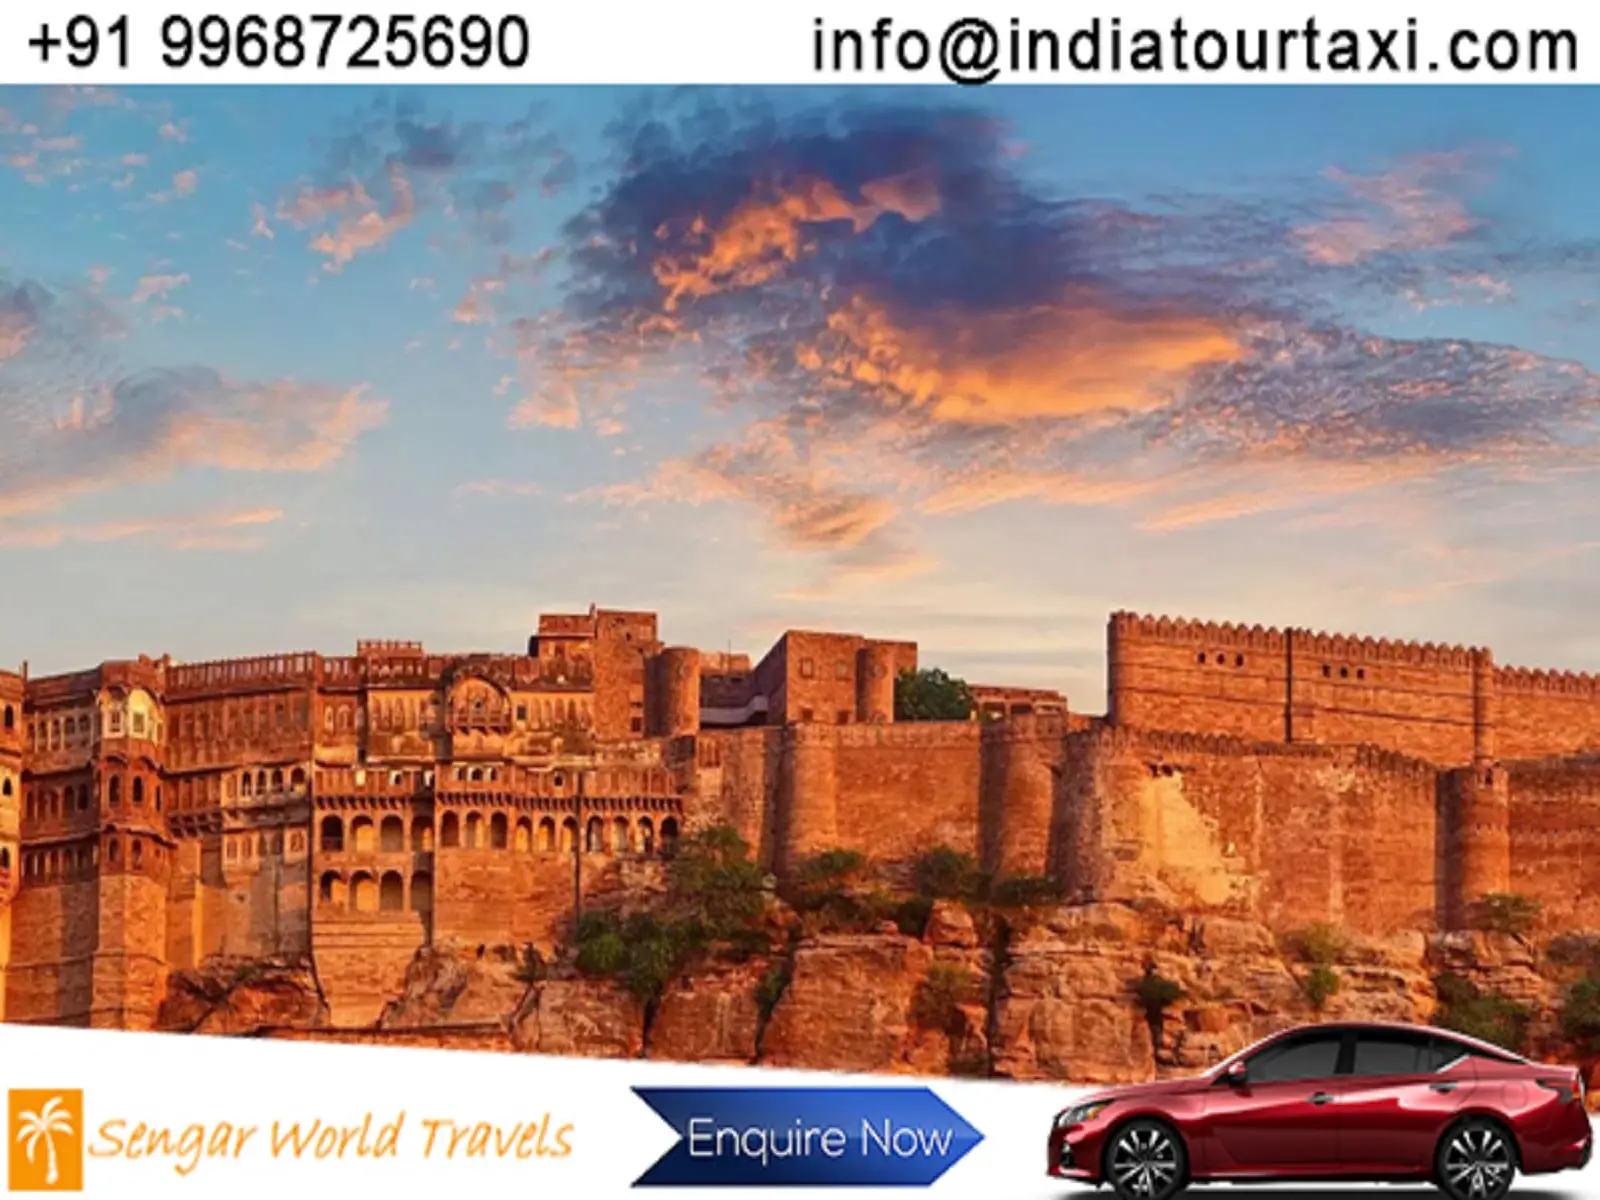 india-tour-taxi-3-20b61815